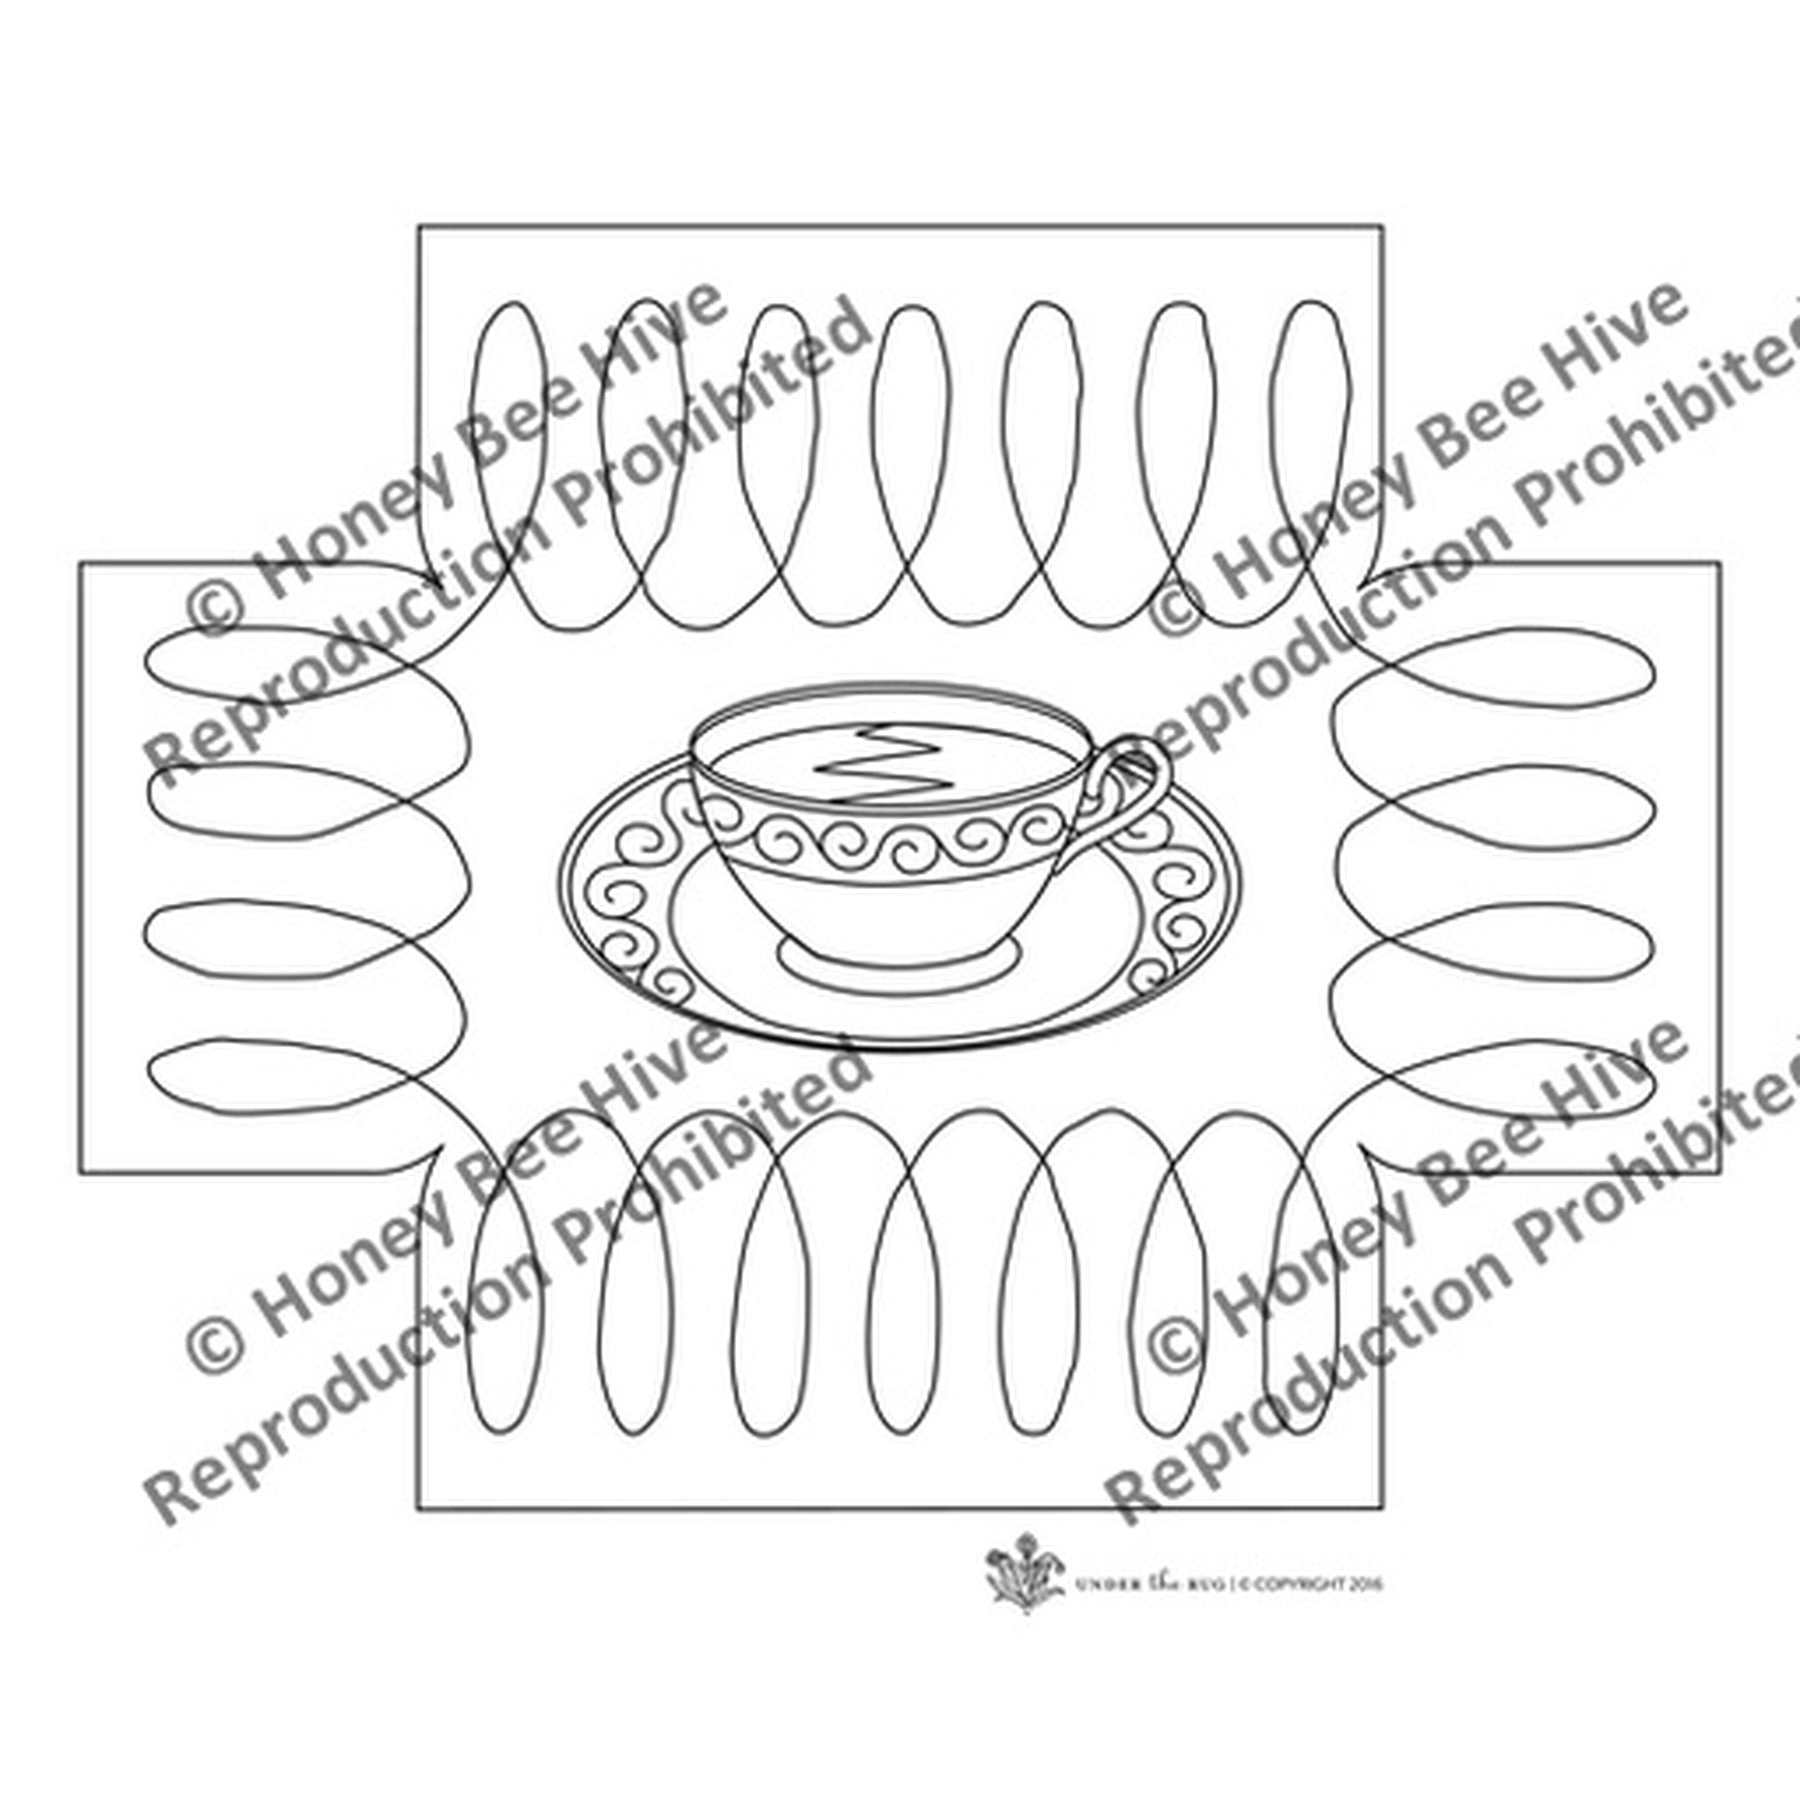 Teacup - Queen Anne Footstool Pattern, rug hooking pattern